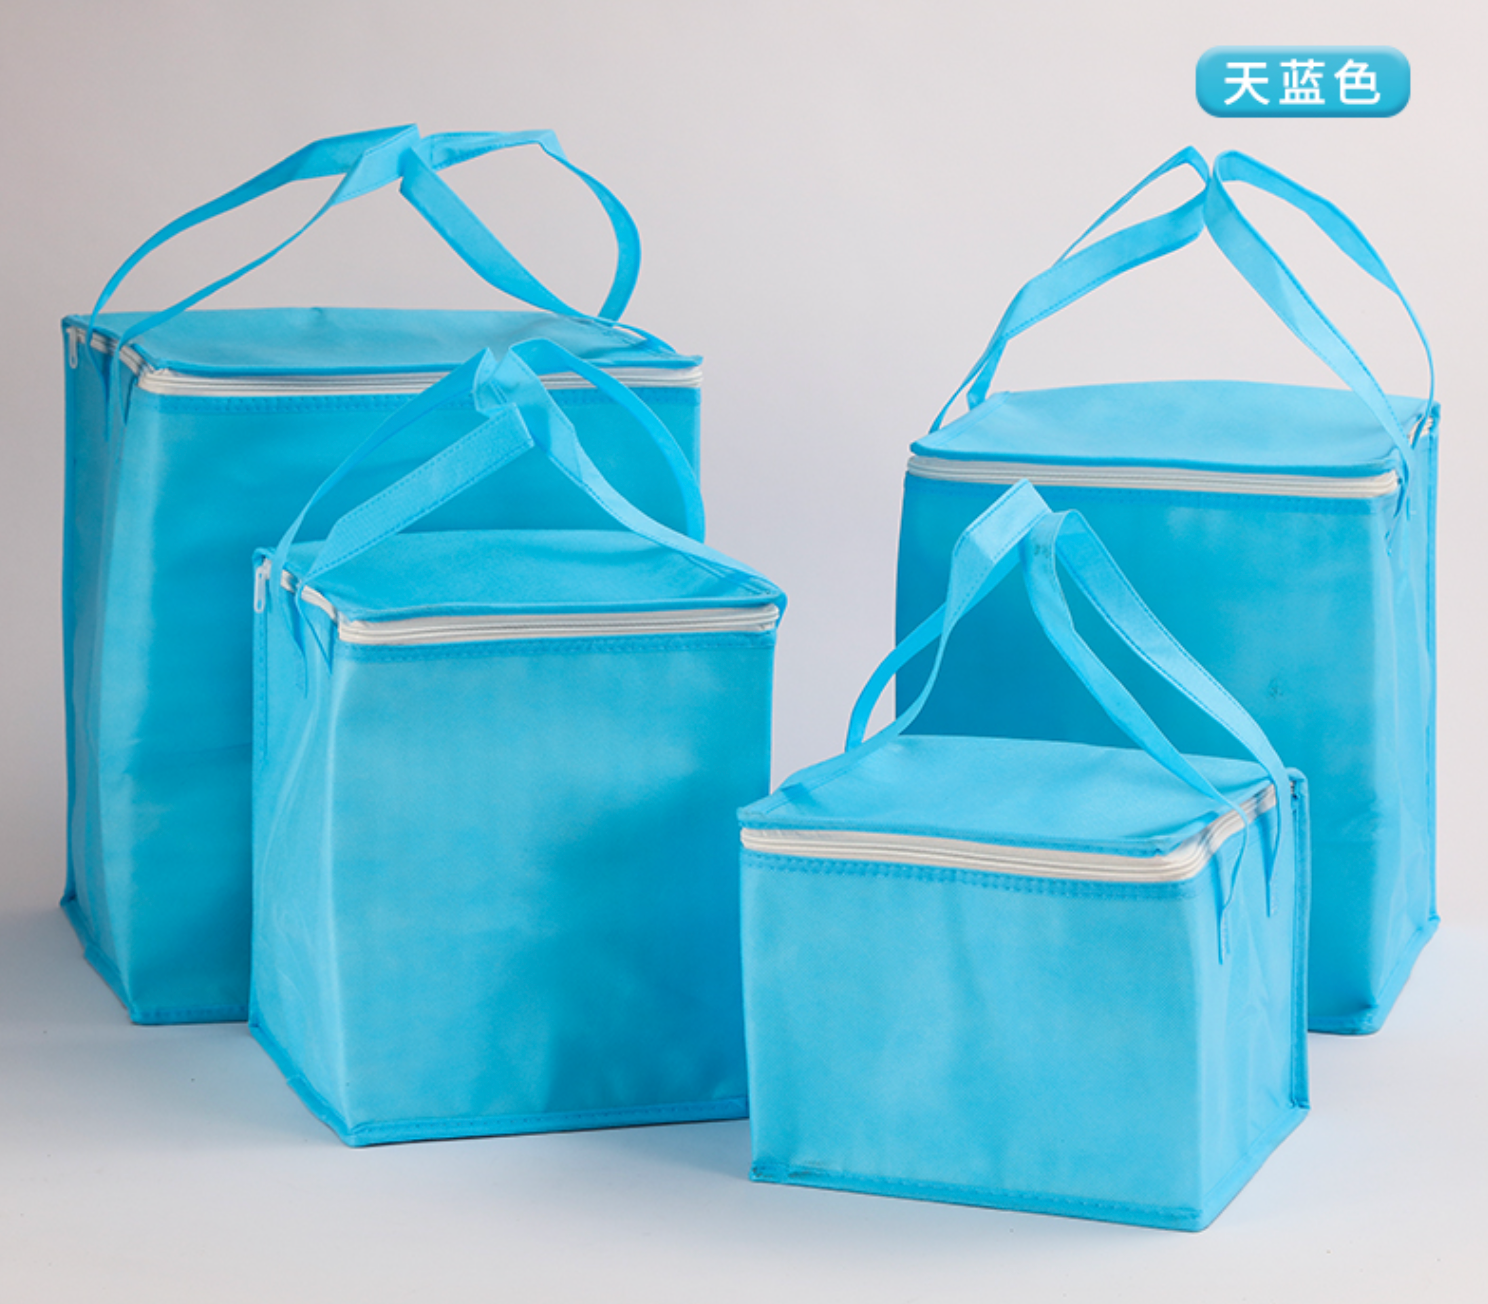 【客製化】保冷保溫不織布購物袋 | 禮品、贈品專業客製禮贈品顧問 | 禮品、贈品專屬客製禮贈品專家